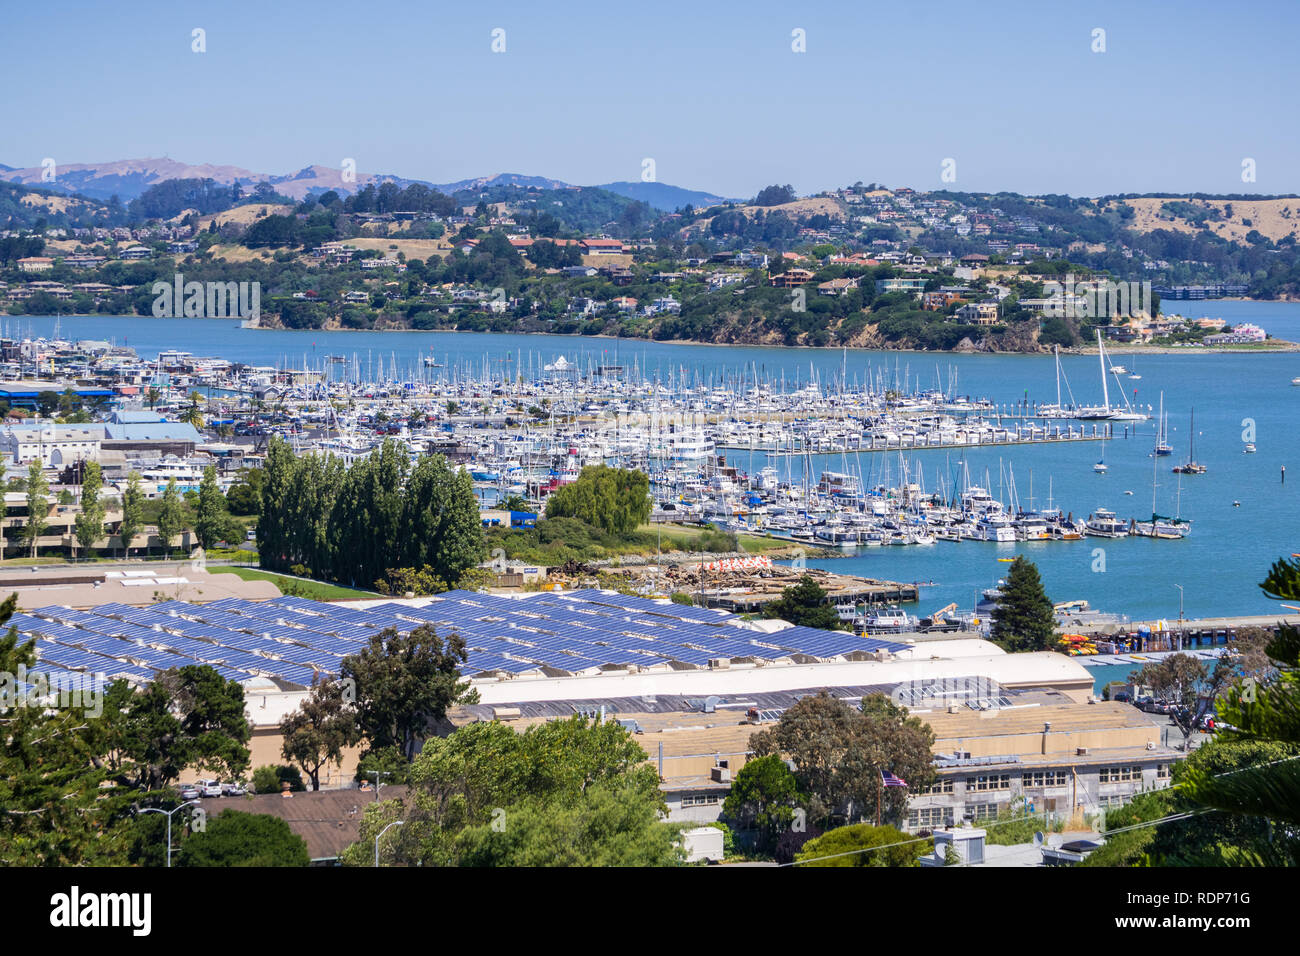 Vue aérienne de la baie de Plaisance et des collines de Sausalito ; des panneaux solaires installés sur le toit d'un immeuble, baie de San Francisco, Californie Banque D'Images